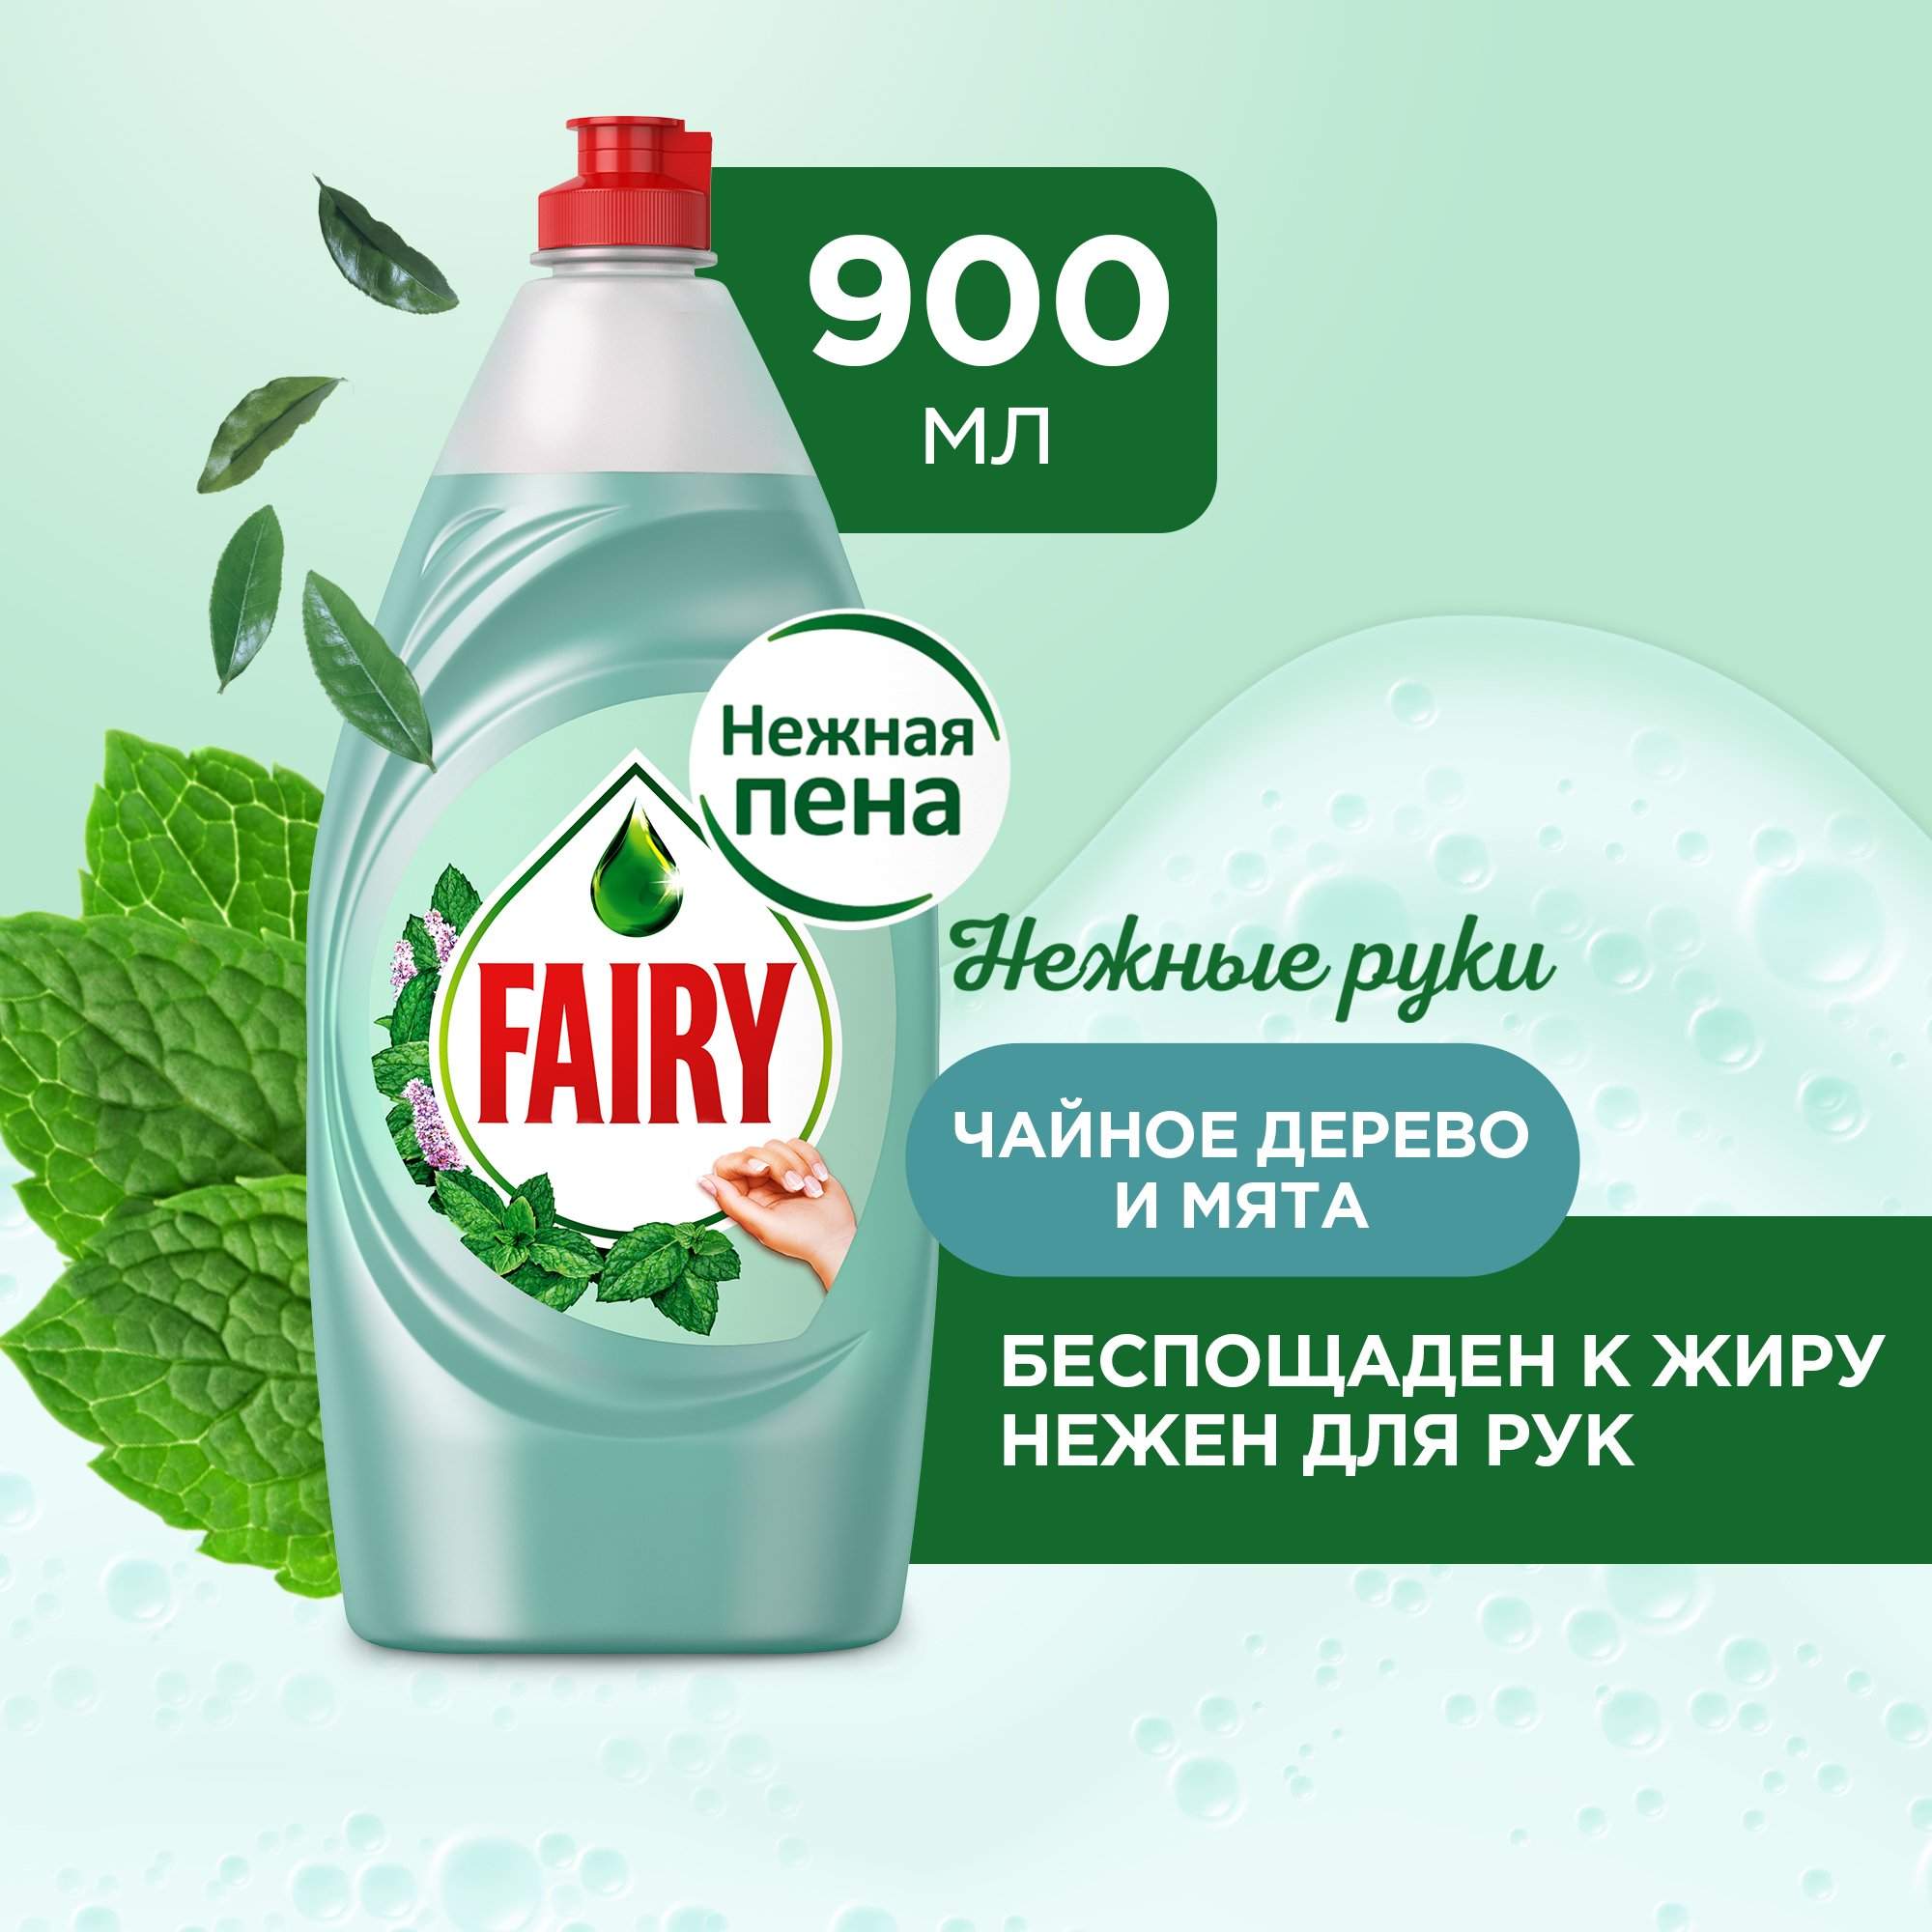 Средство для мытья посуды FAIRY Нежные руки Чайное дерево и мята, 900 мл - купить в Москве, цены на Мегамаркет | 100001553990